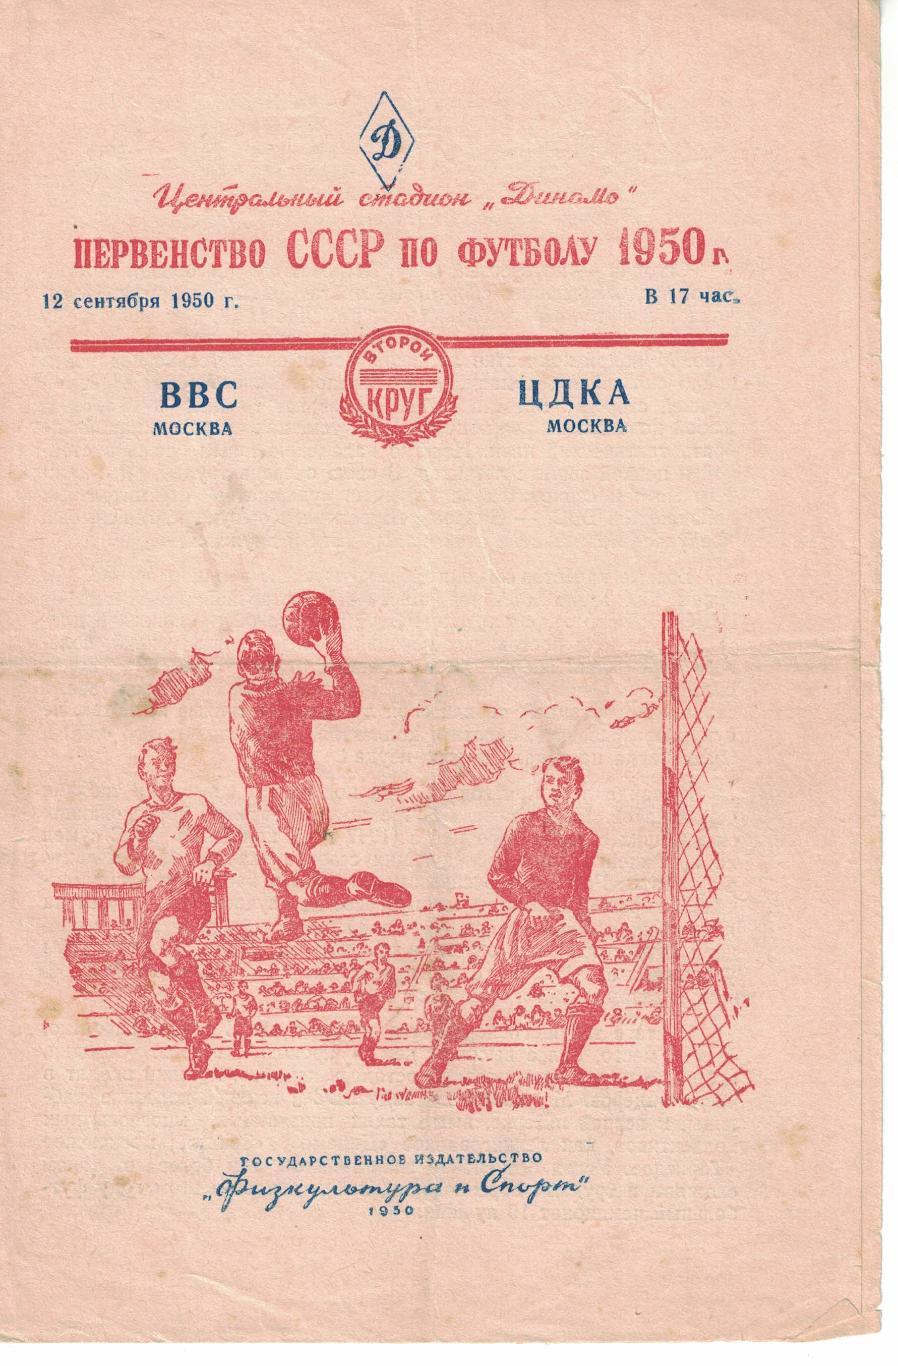 ВВС Москва - ЦДКА 12.09.1950 Чемпионат СССР